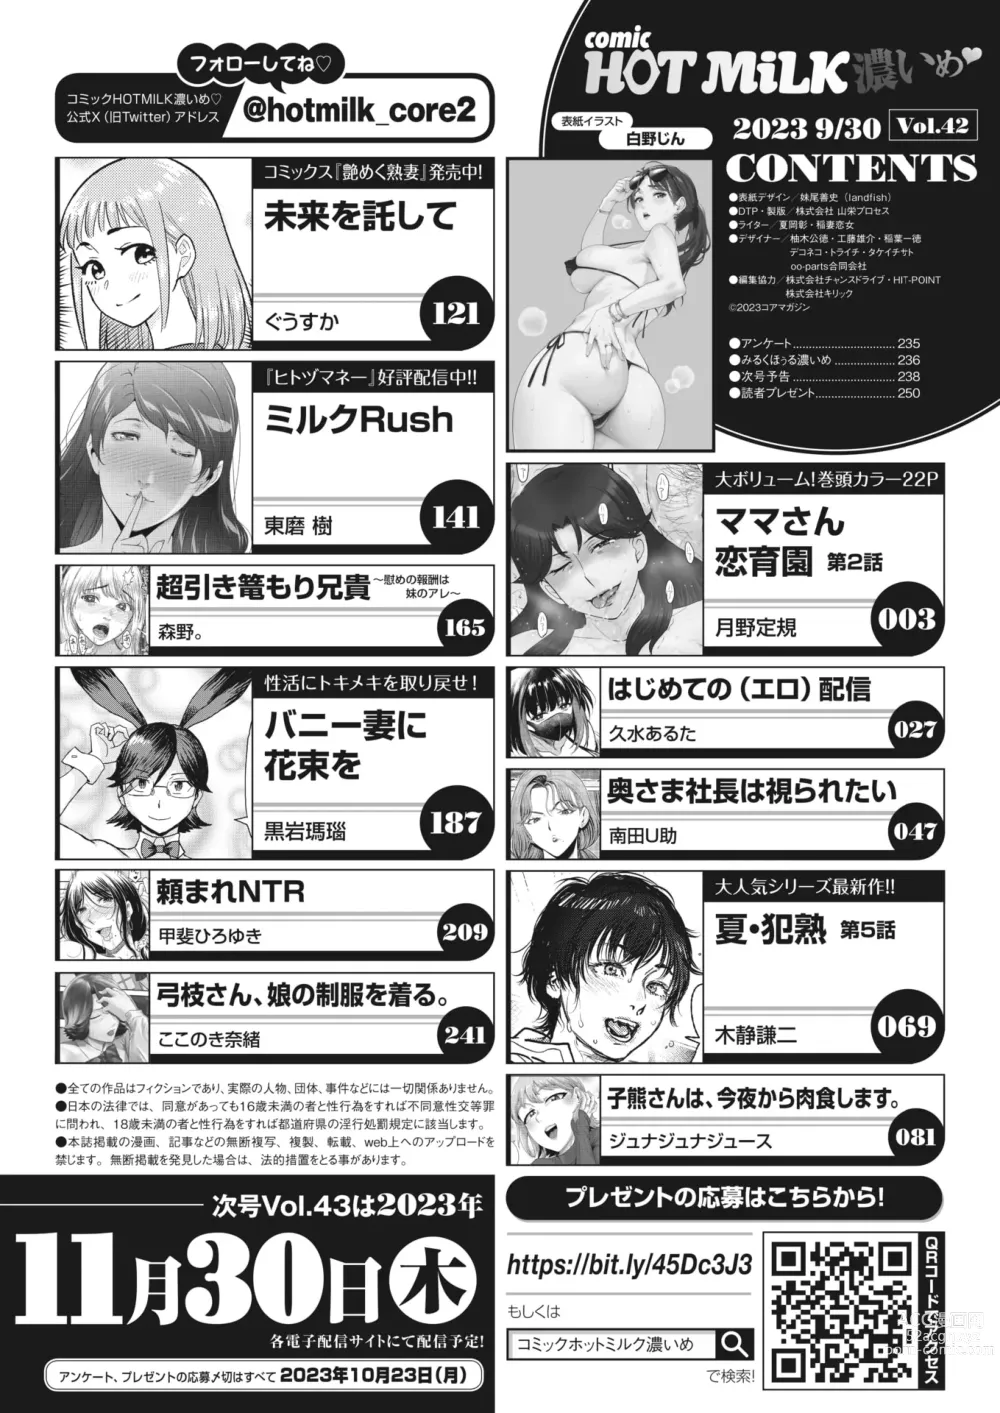 Page 3 of manga COMIC HOTMiLK Koime Vol. 42